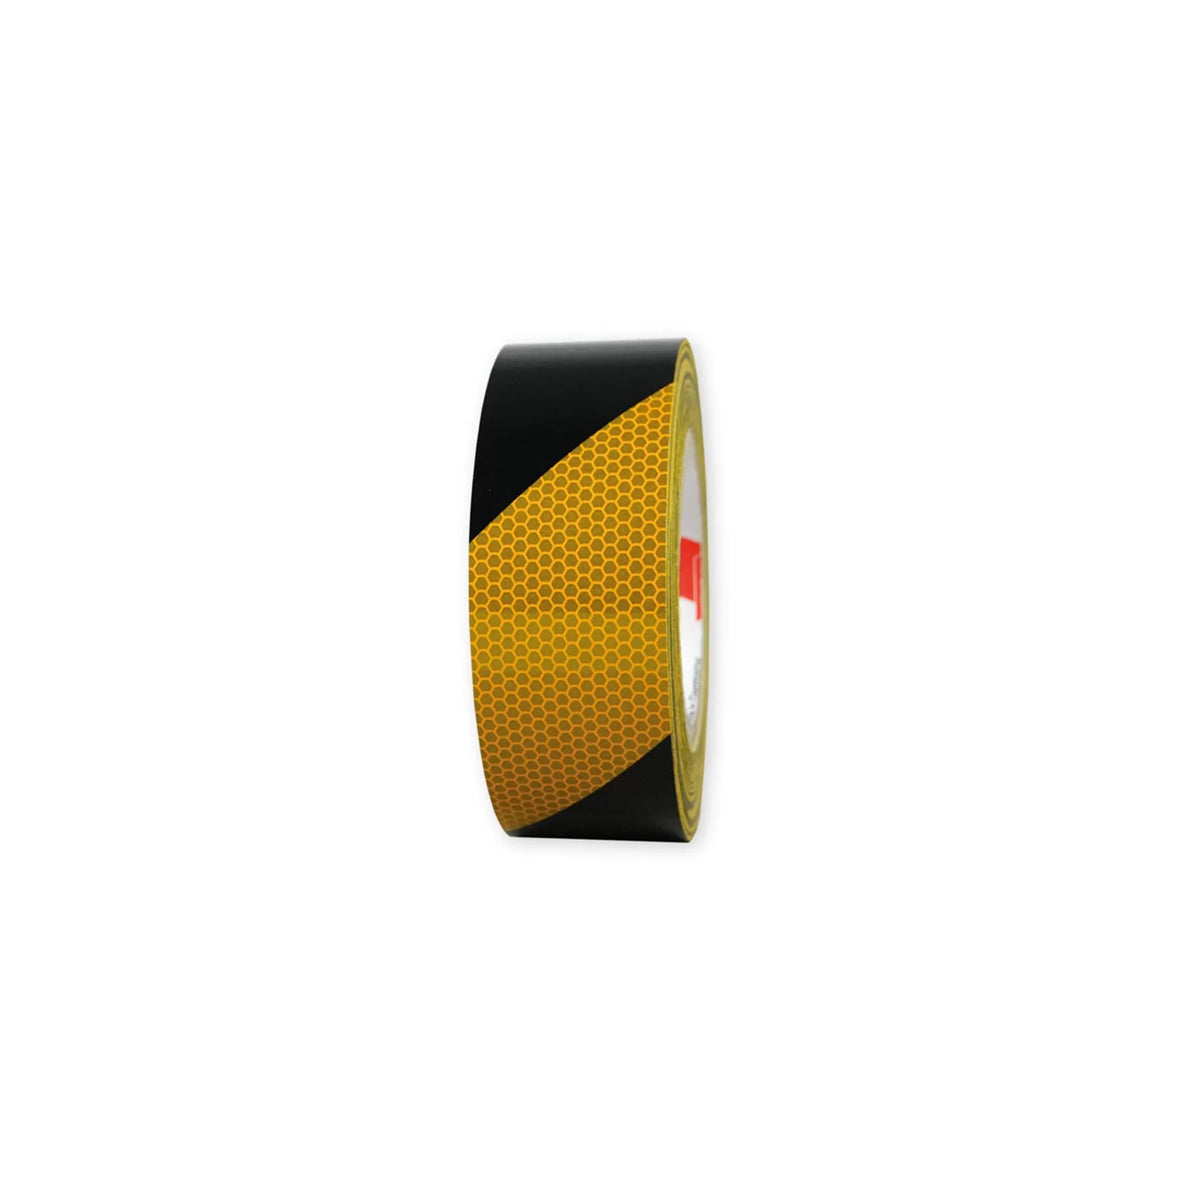 Warnmarkierungsband R2, für Fahrzeuge, R2, gelb-schwarz, 25 m x 50 mm, linksweisend